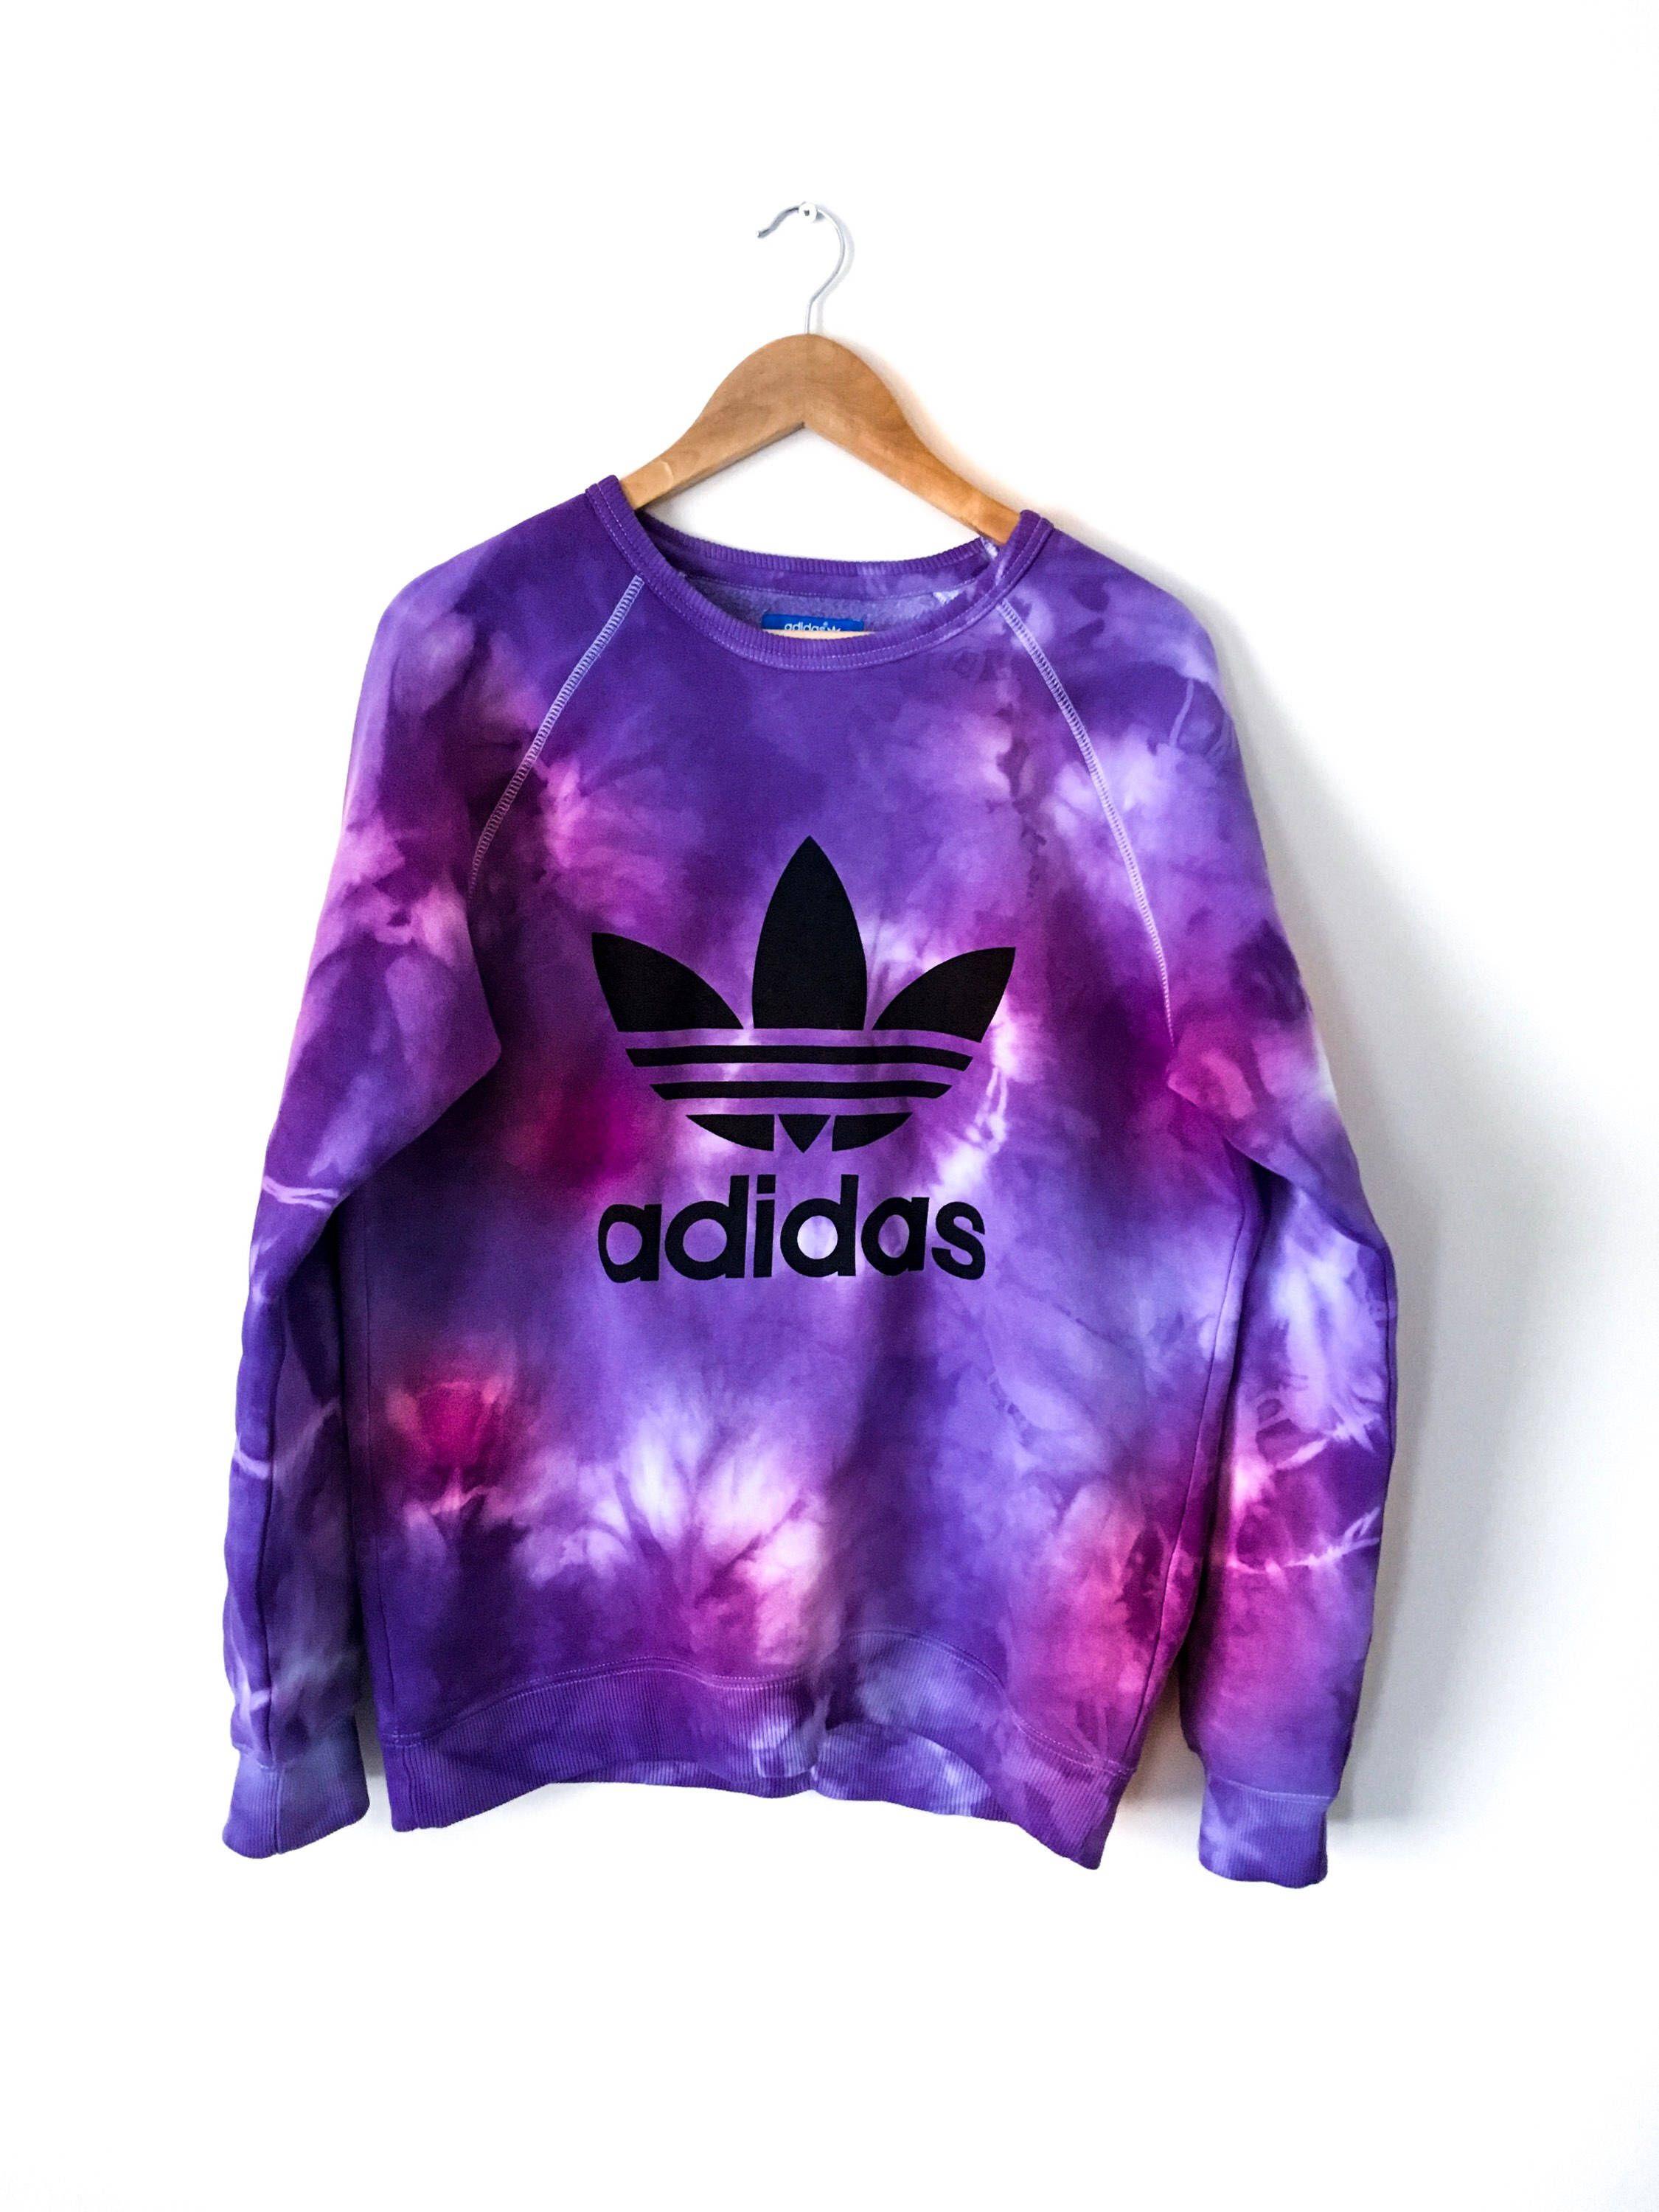 Adidas Tie Dye Logo - Adidas tie dye sweatshirt. Grunge, purple, pink, tie dye, tie dye